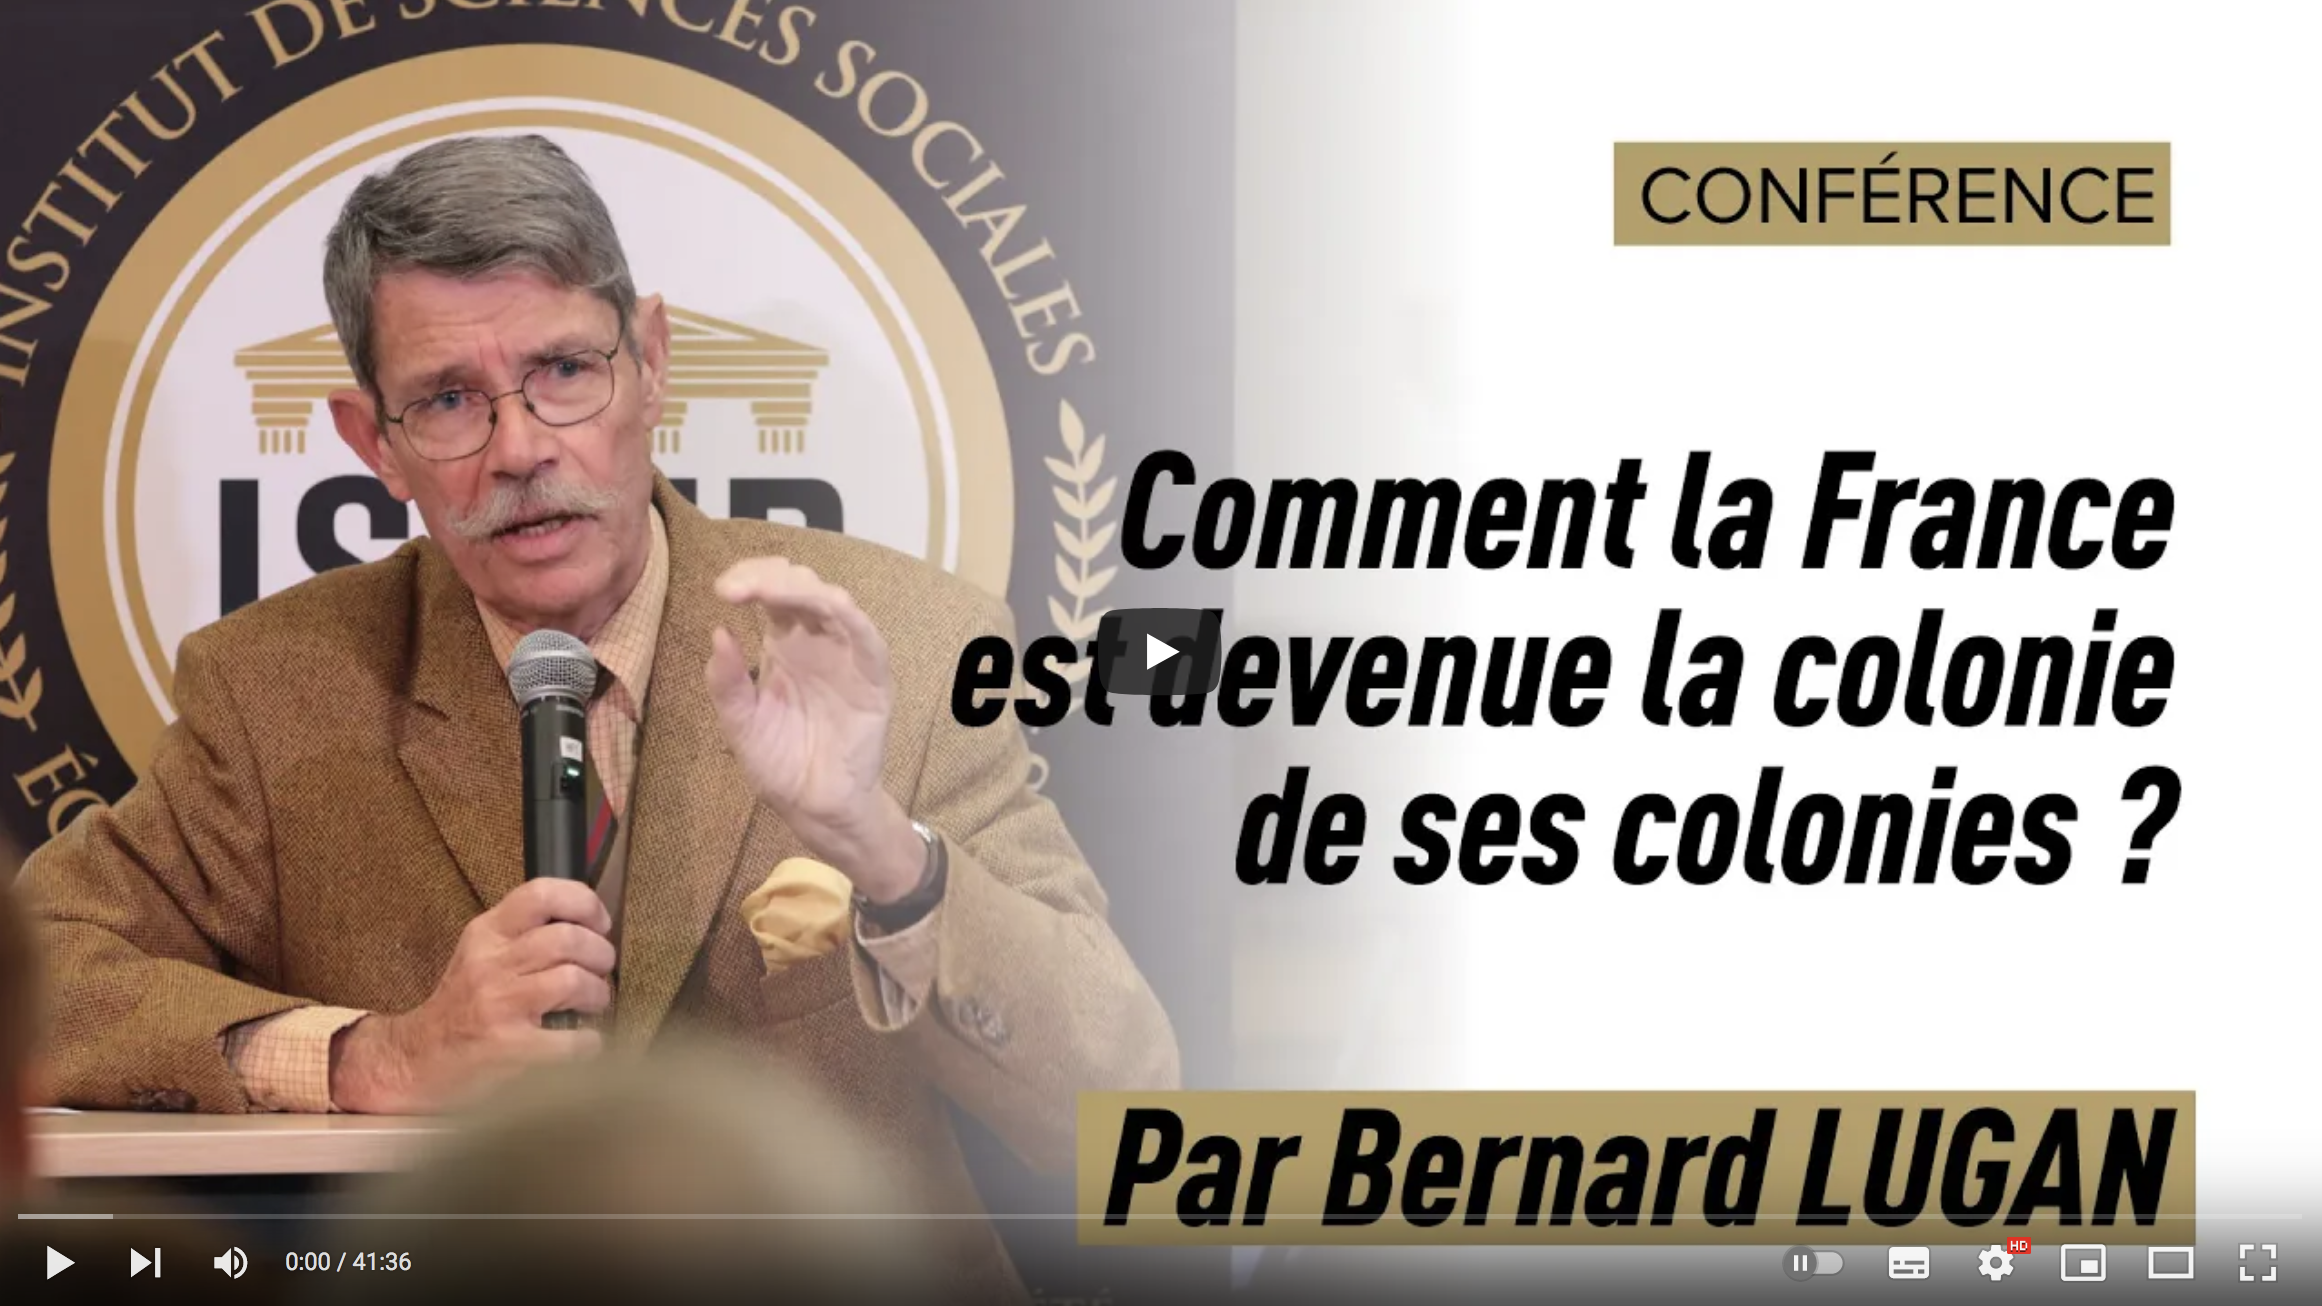 Bernard Lugan : Comment la France est devenue la colonie de ses colonies ? (CONFÉRENCE)